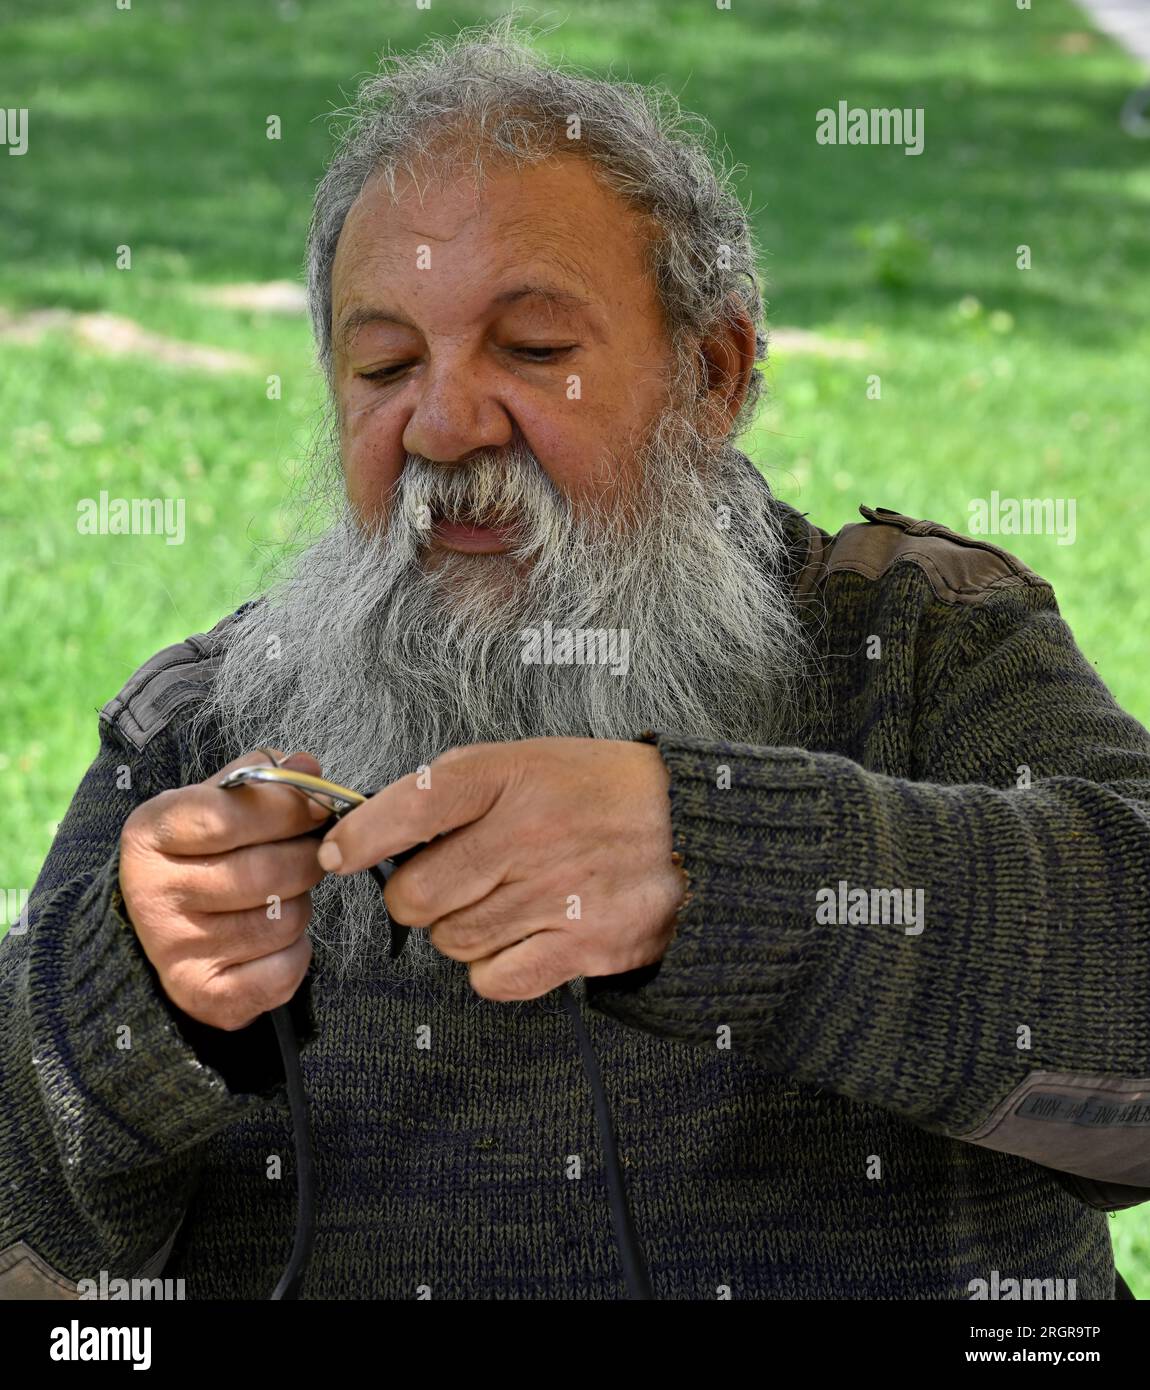 Portrait d'un homme portugais plus âgé avec la barbe grise regardant l'objet qu'il tient dans ses mains Banque D'Images